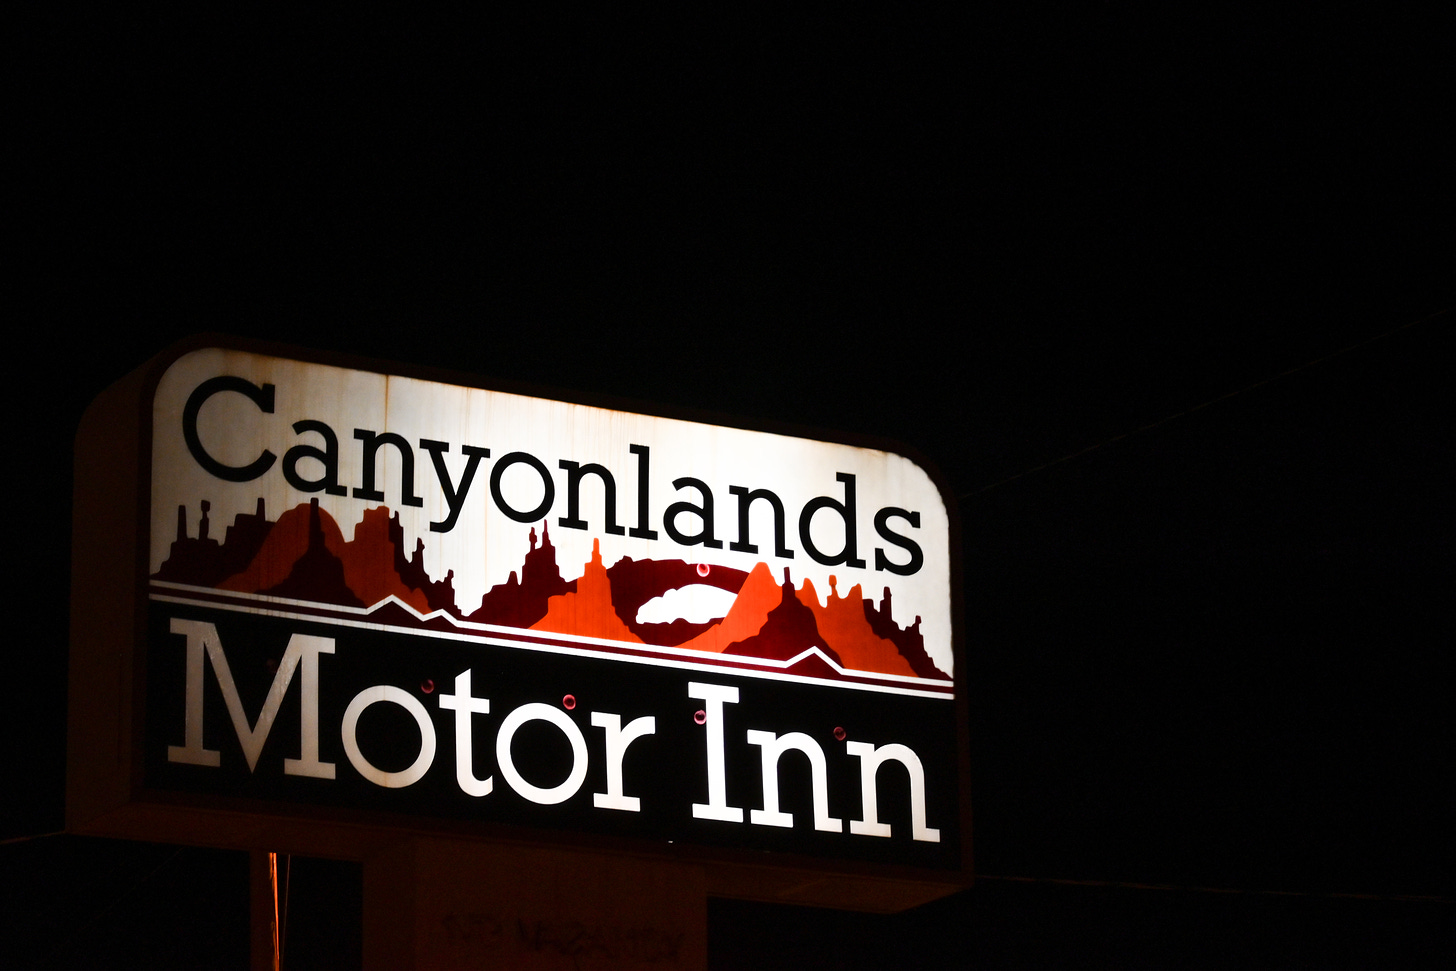 Sign for Canyonlands Motor Inn